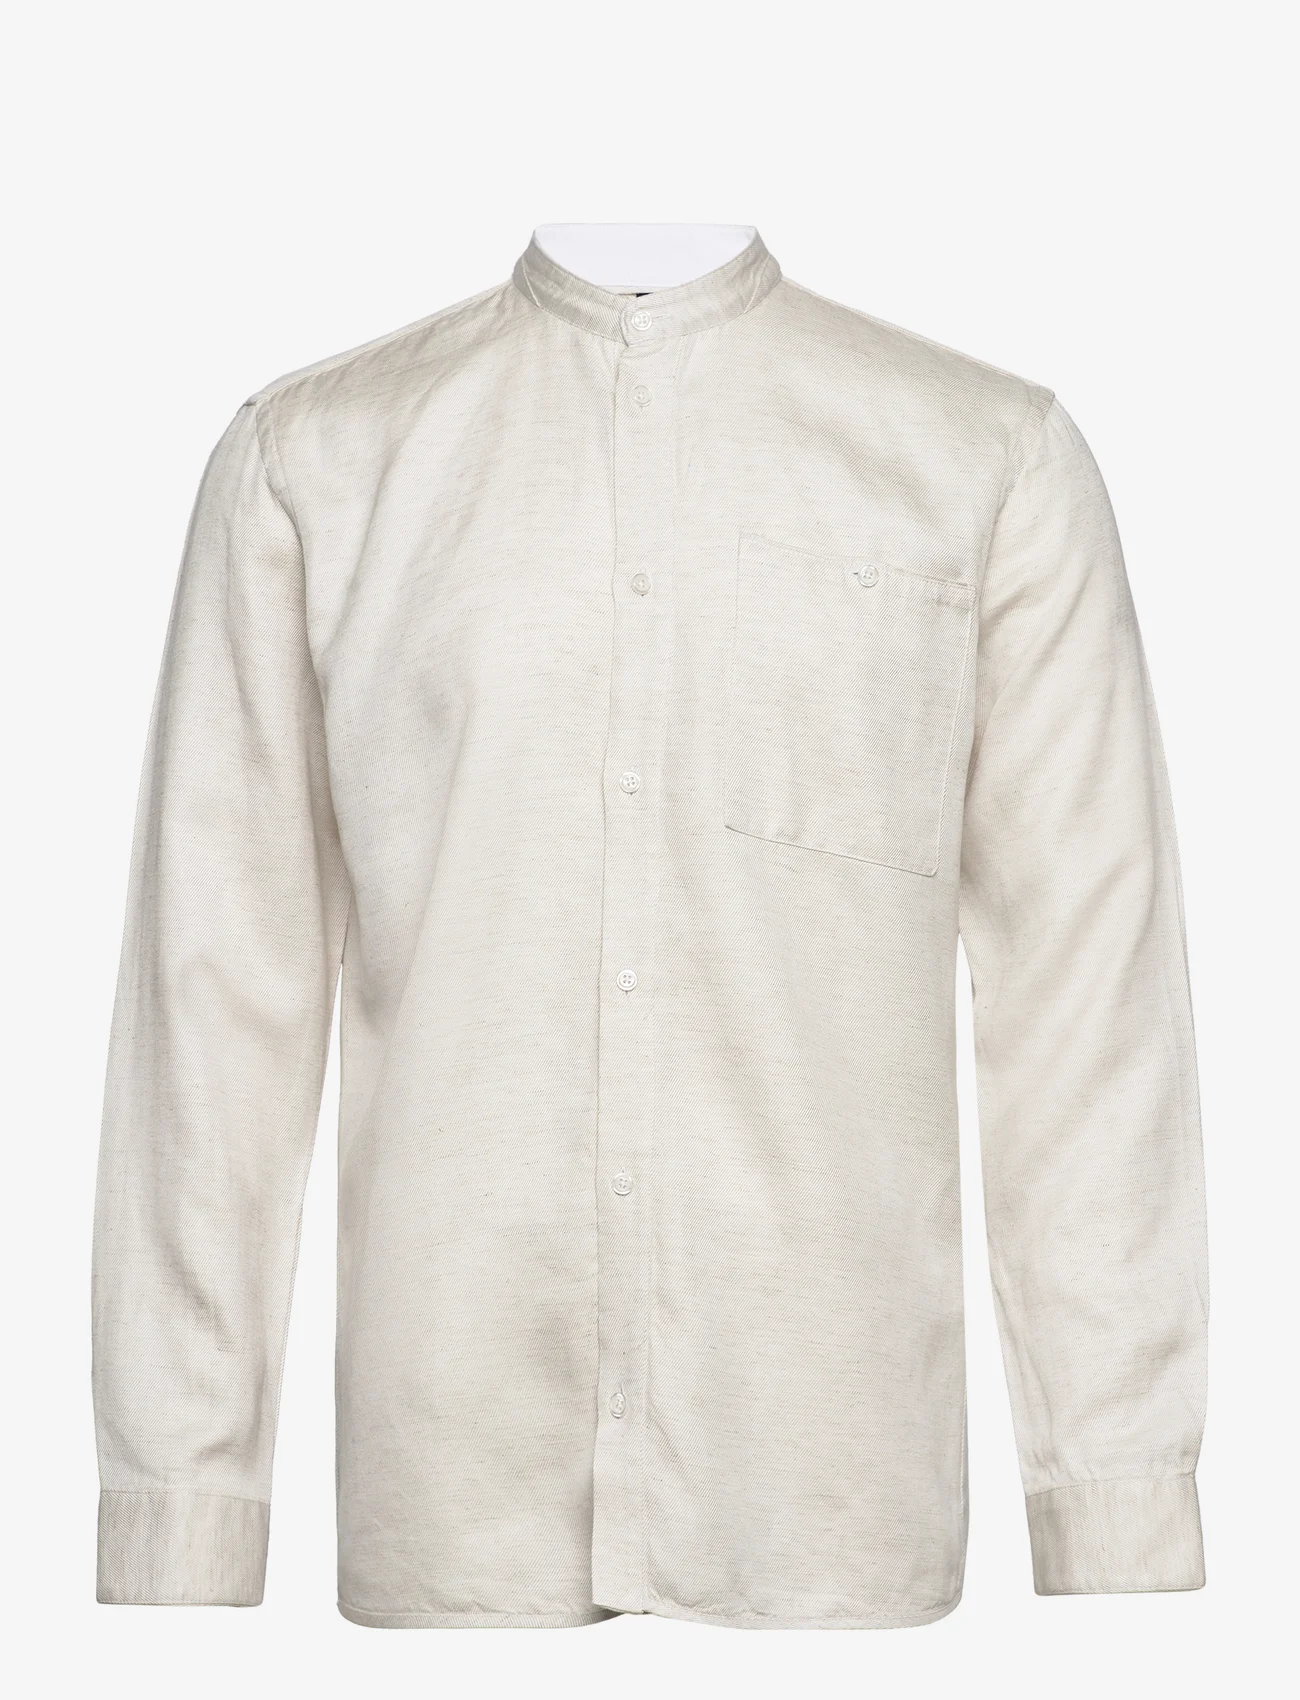 Bruuns Bazaar - Lin Jour shirt - laisvalaikio marškiniai - white - 0